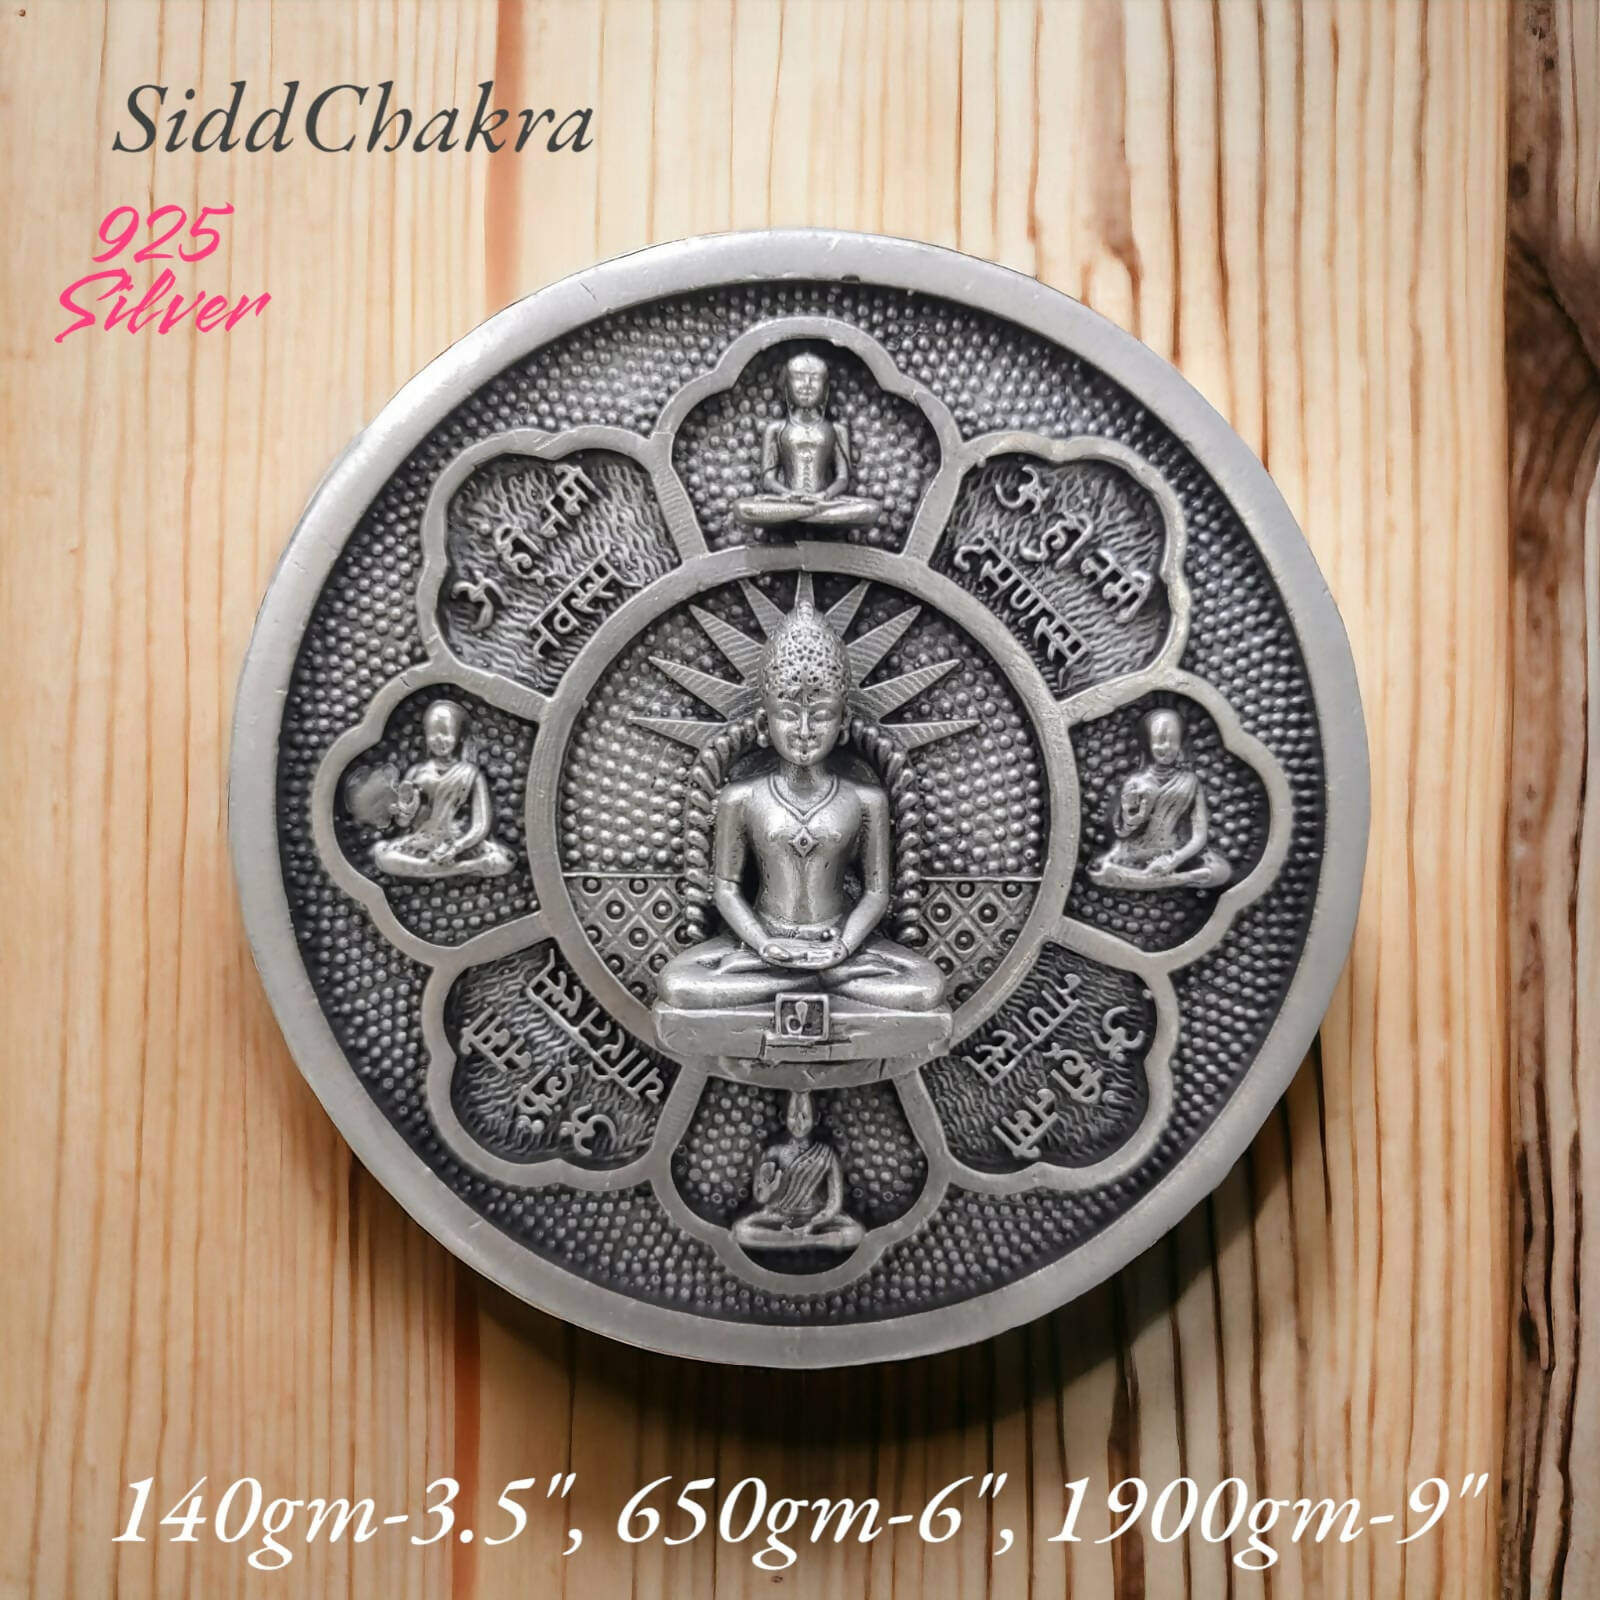 925 Silver Sidd Chakra Coin Sarafa Bazar India